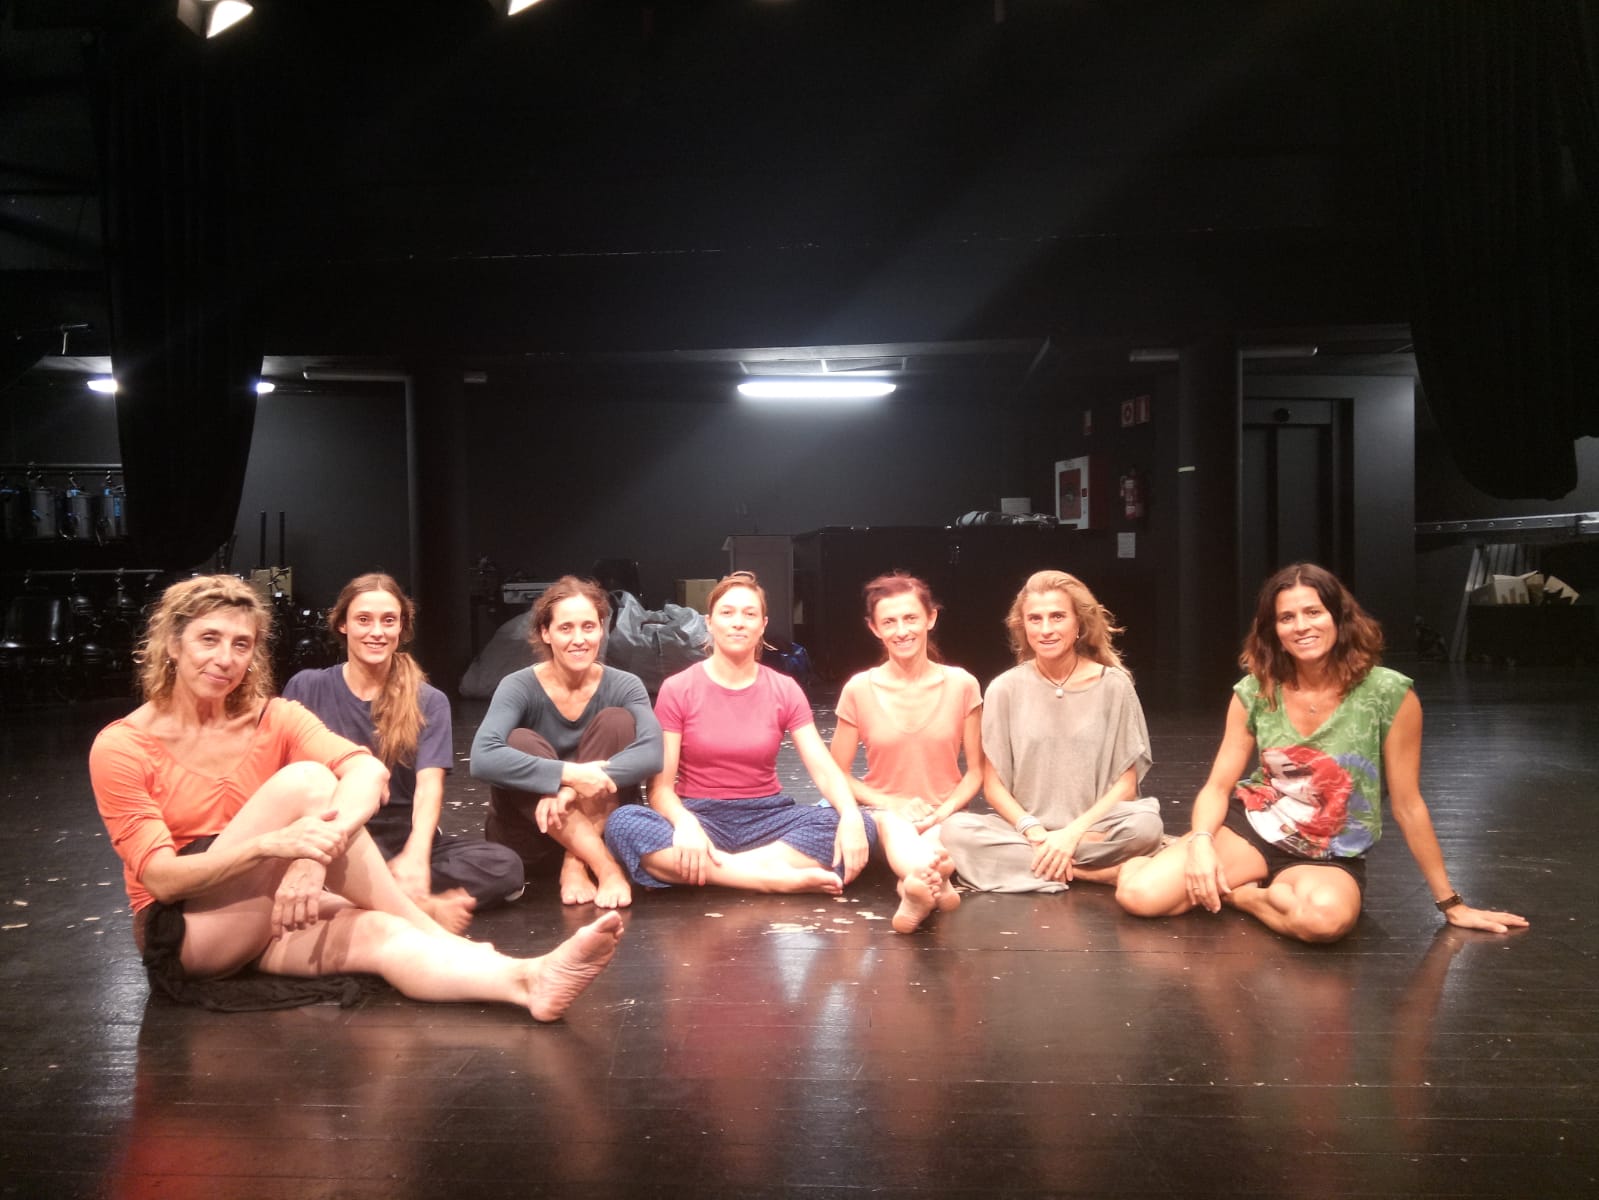 Esta Semana La Directora De La Compañía De Danza Organik Nos Ha Invitado A Que Compartiéramos Con Ella Y Las 5 Bailarinas Una Sesión De Yoga De Cachemira.